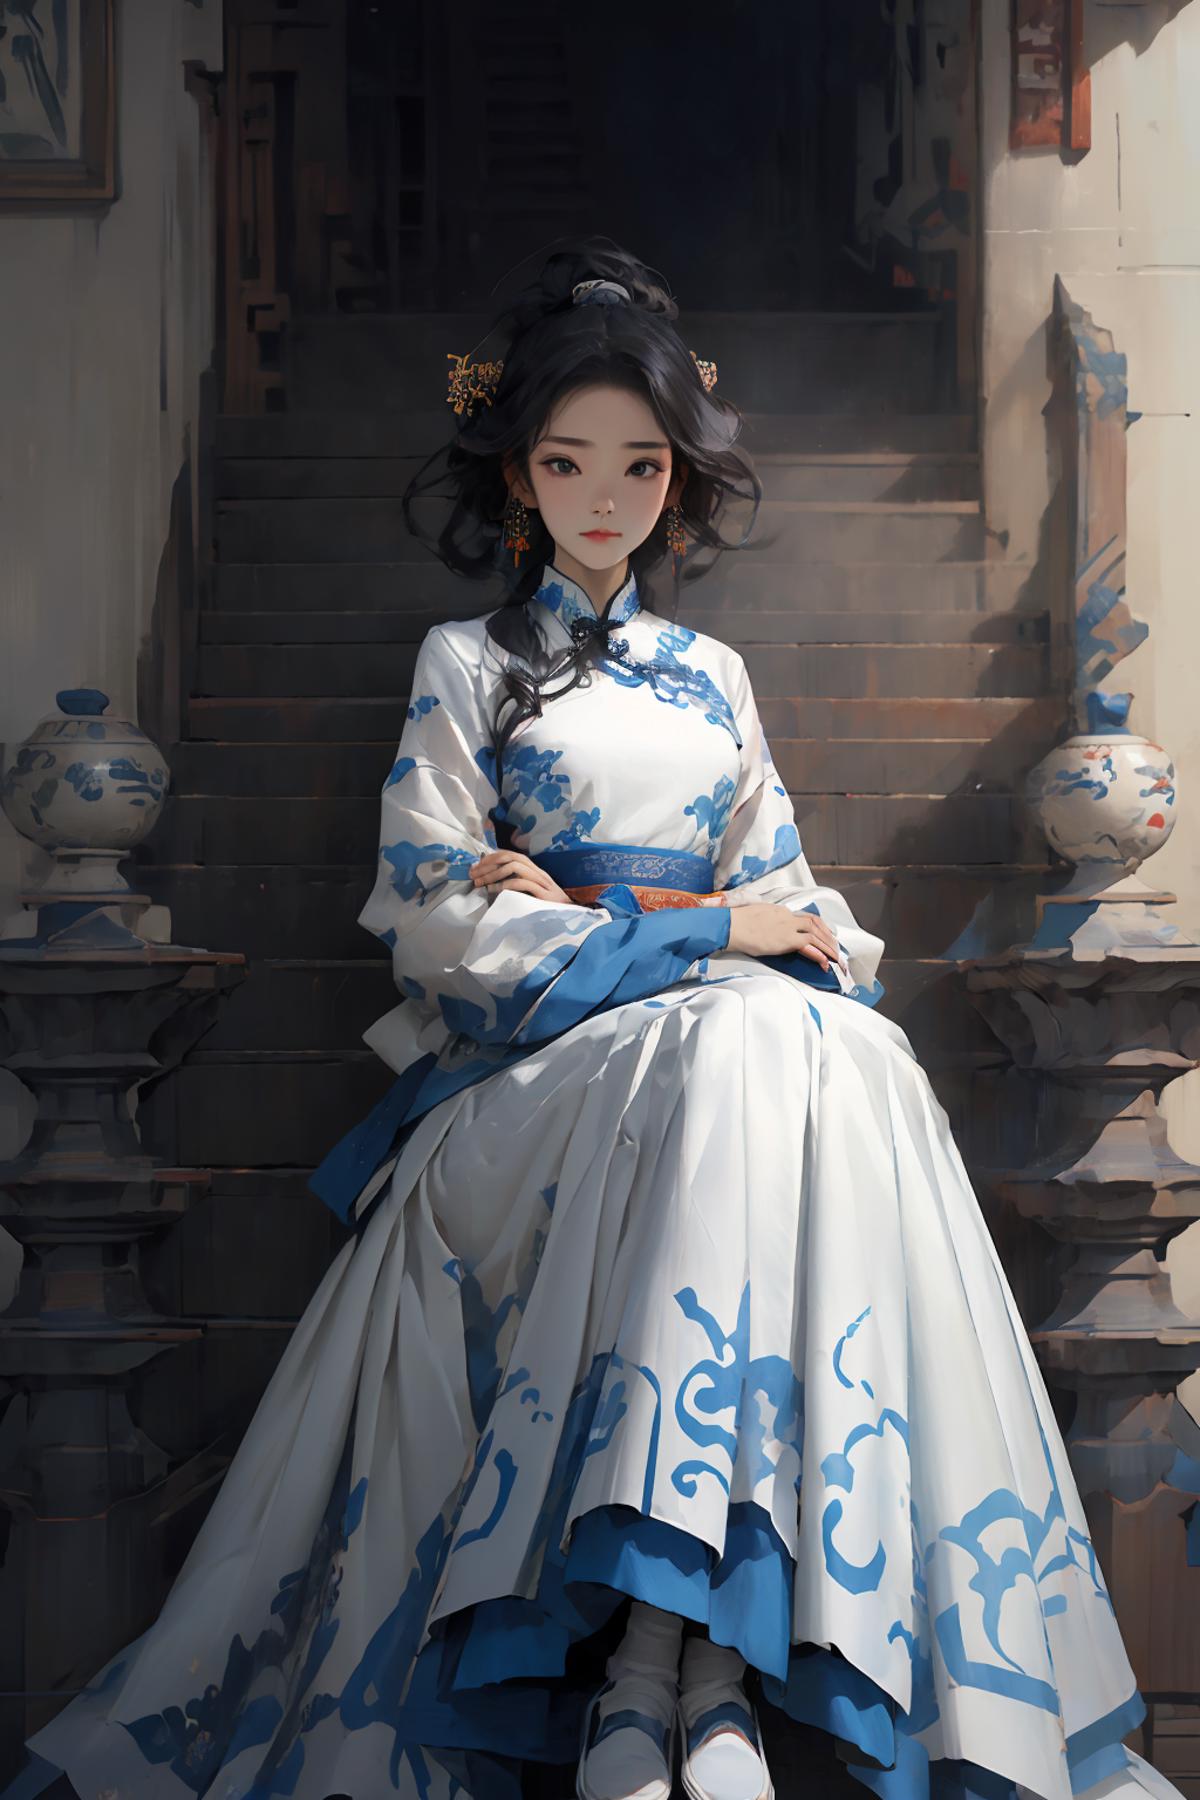 青花 blue-and-white | Chinese ornament image by XiongSan